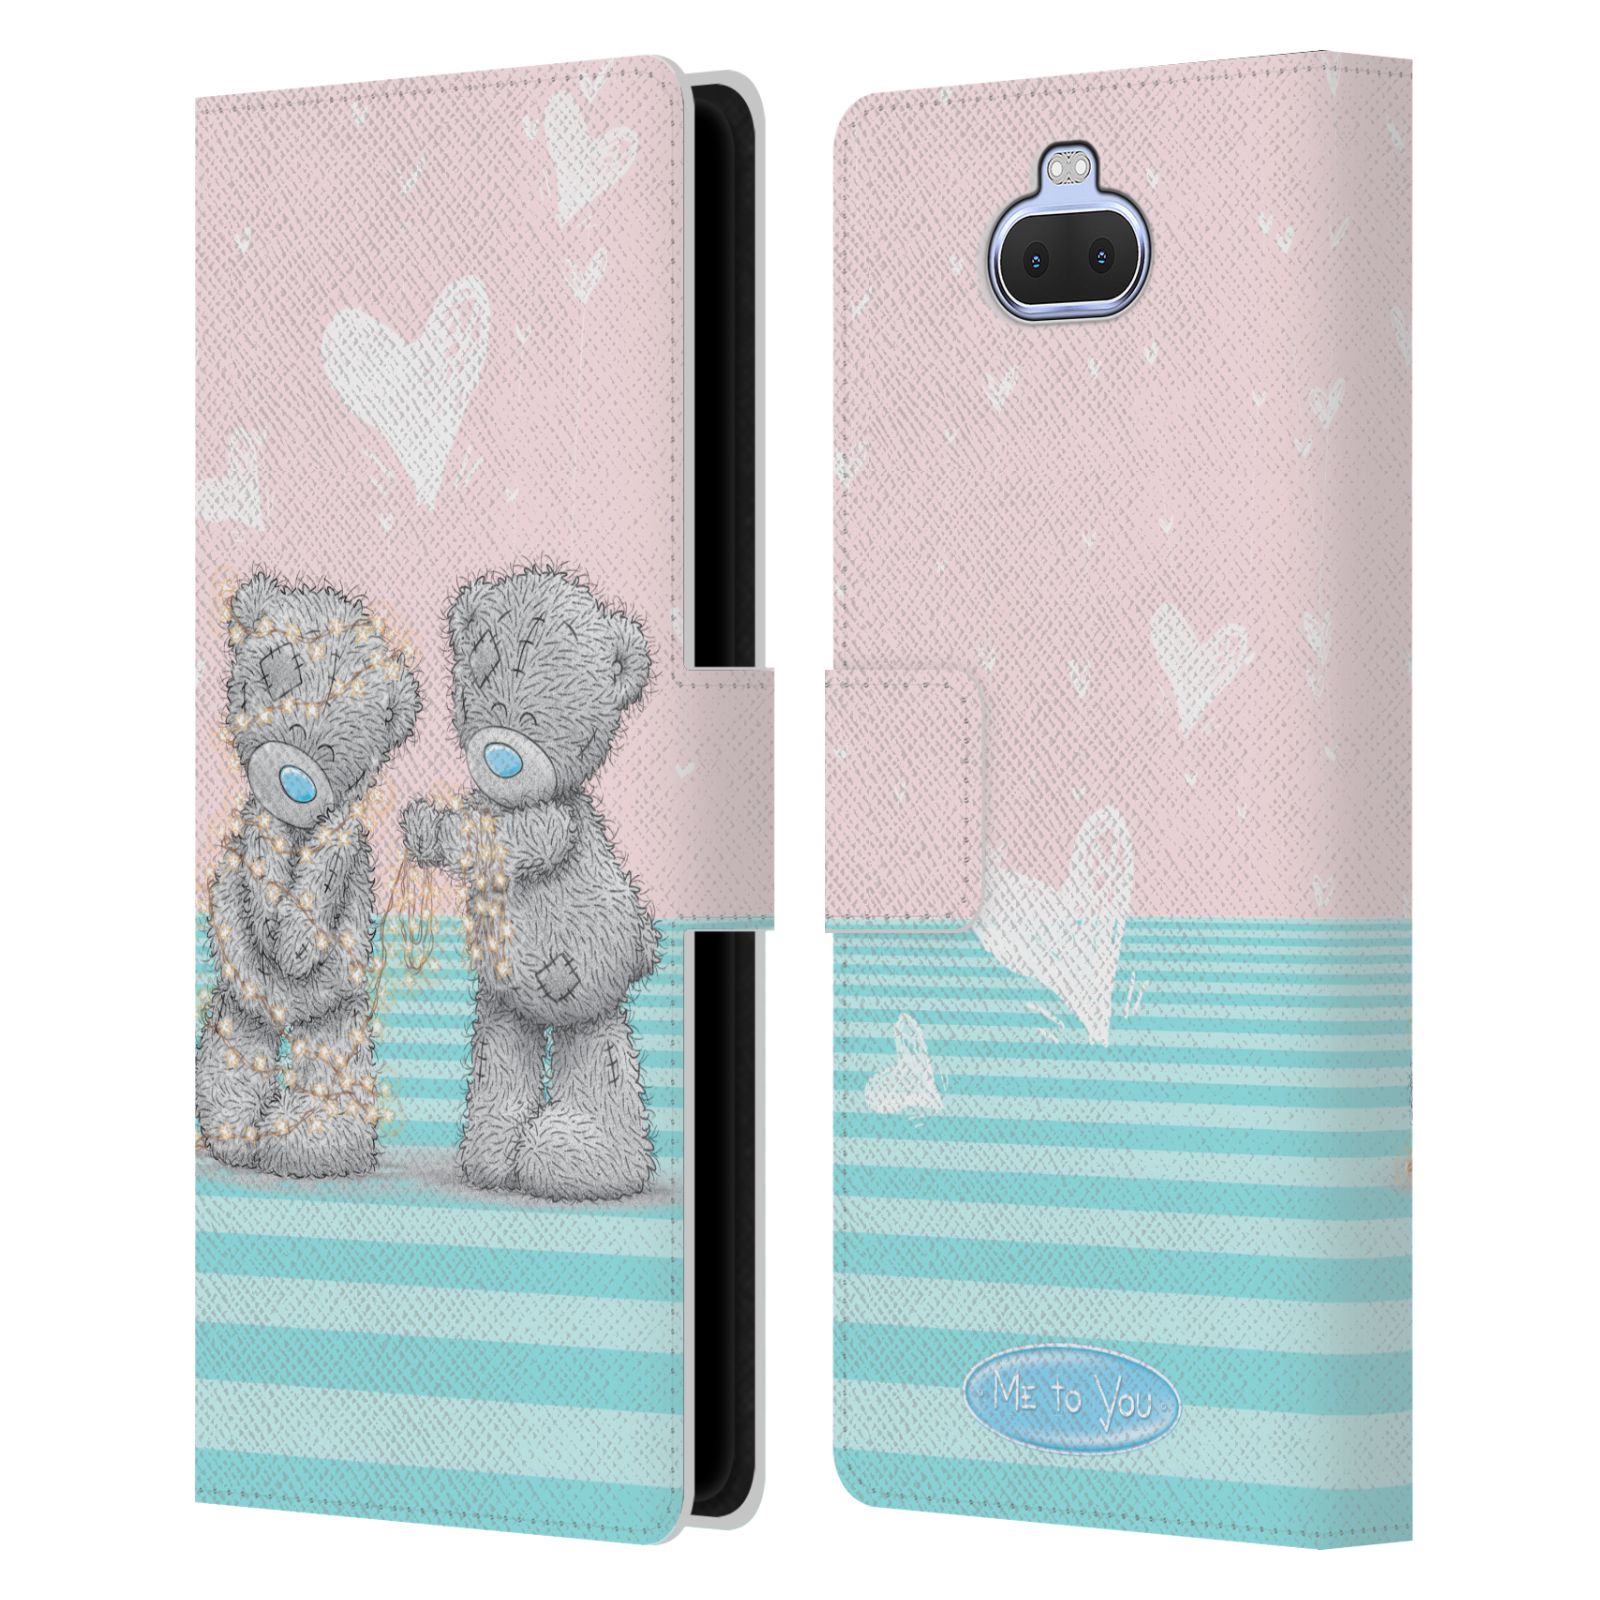 Pouzdro na mobil Sony Xperia 10 PLUS  - HEAD CASE - Me To You - Zamilovaní medvídci